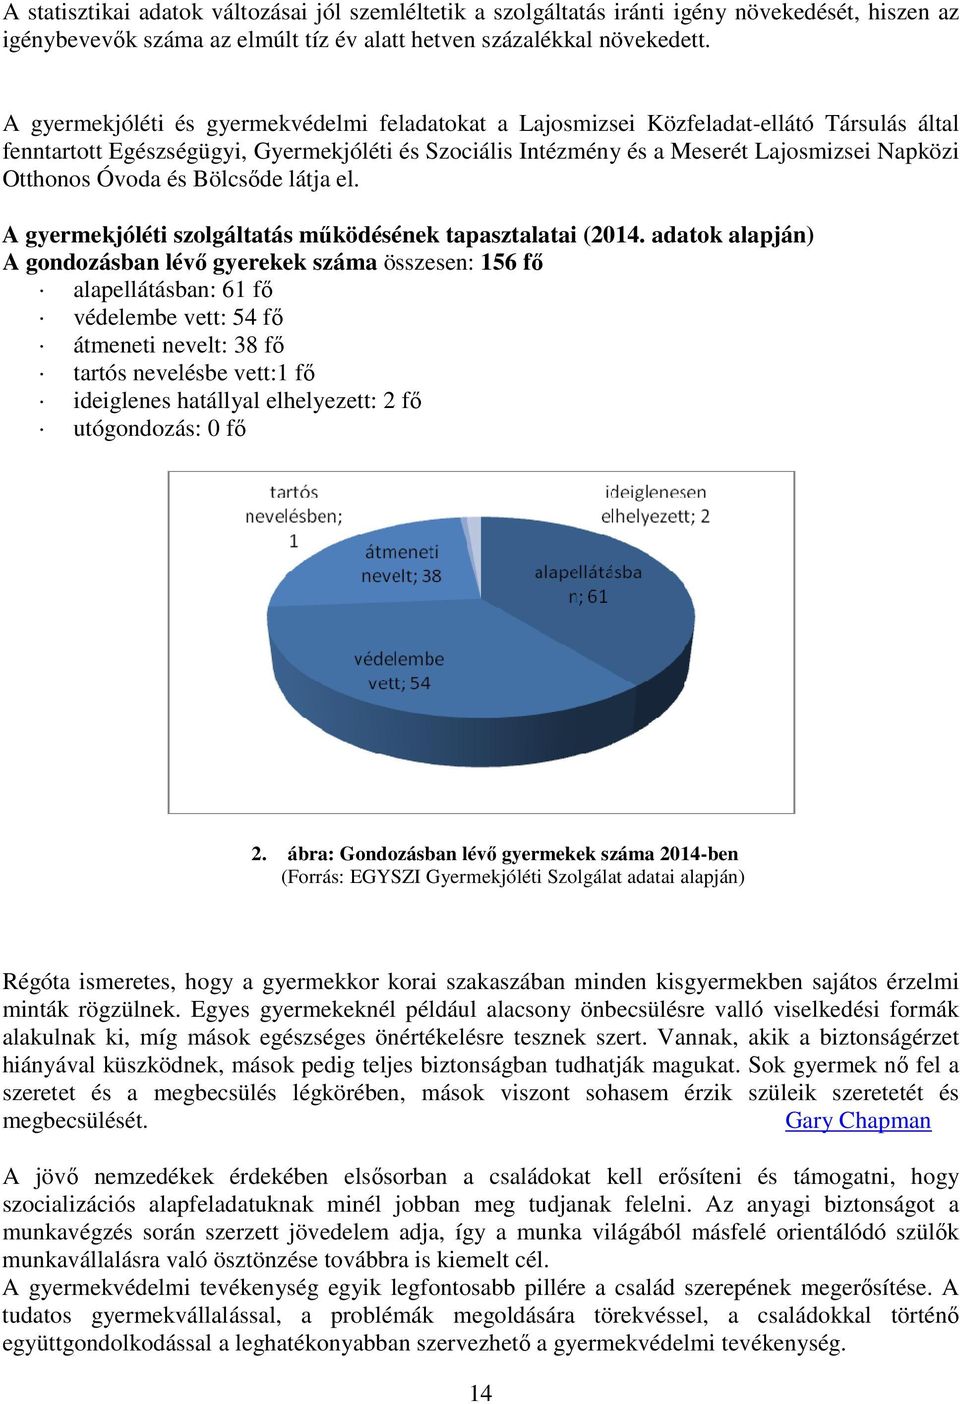 Óvoda és Bölcsıde látja el. A gyermekjóléti szolgáltatás mőködésének tapasztalatai (2014.